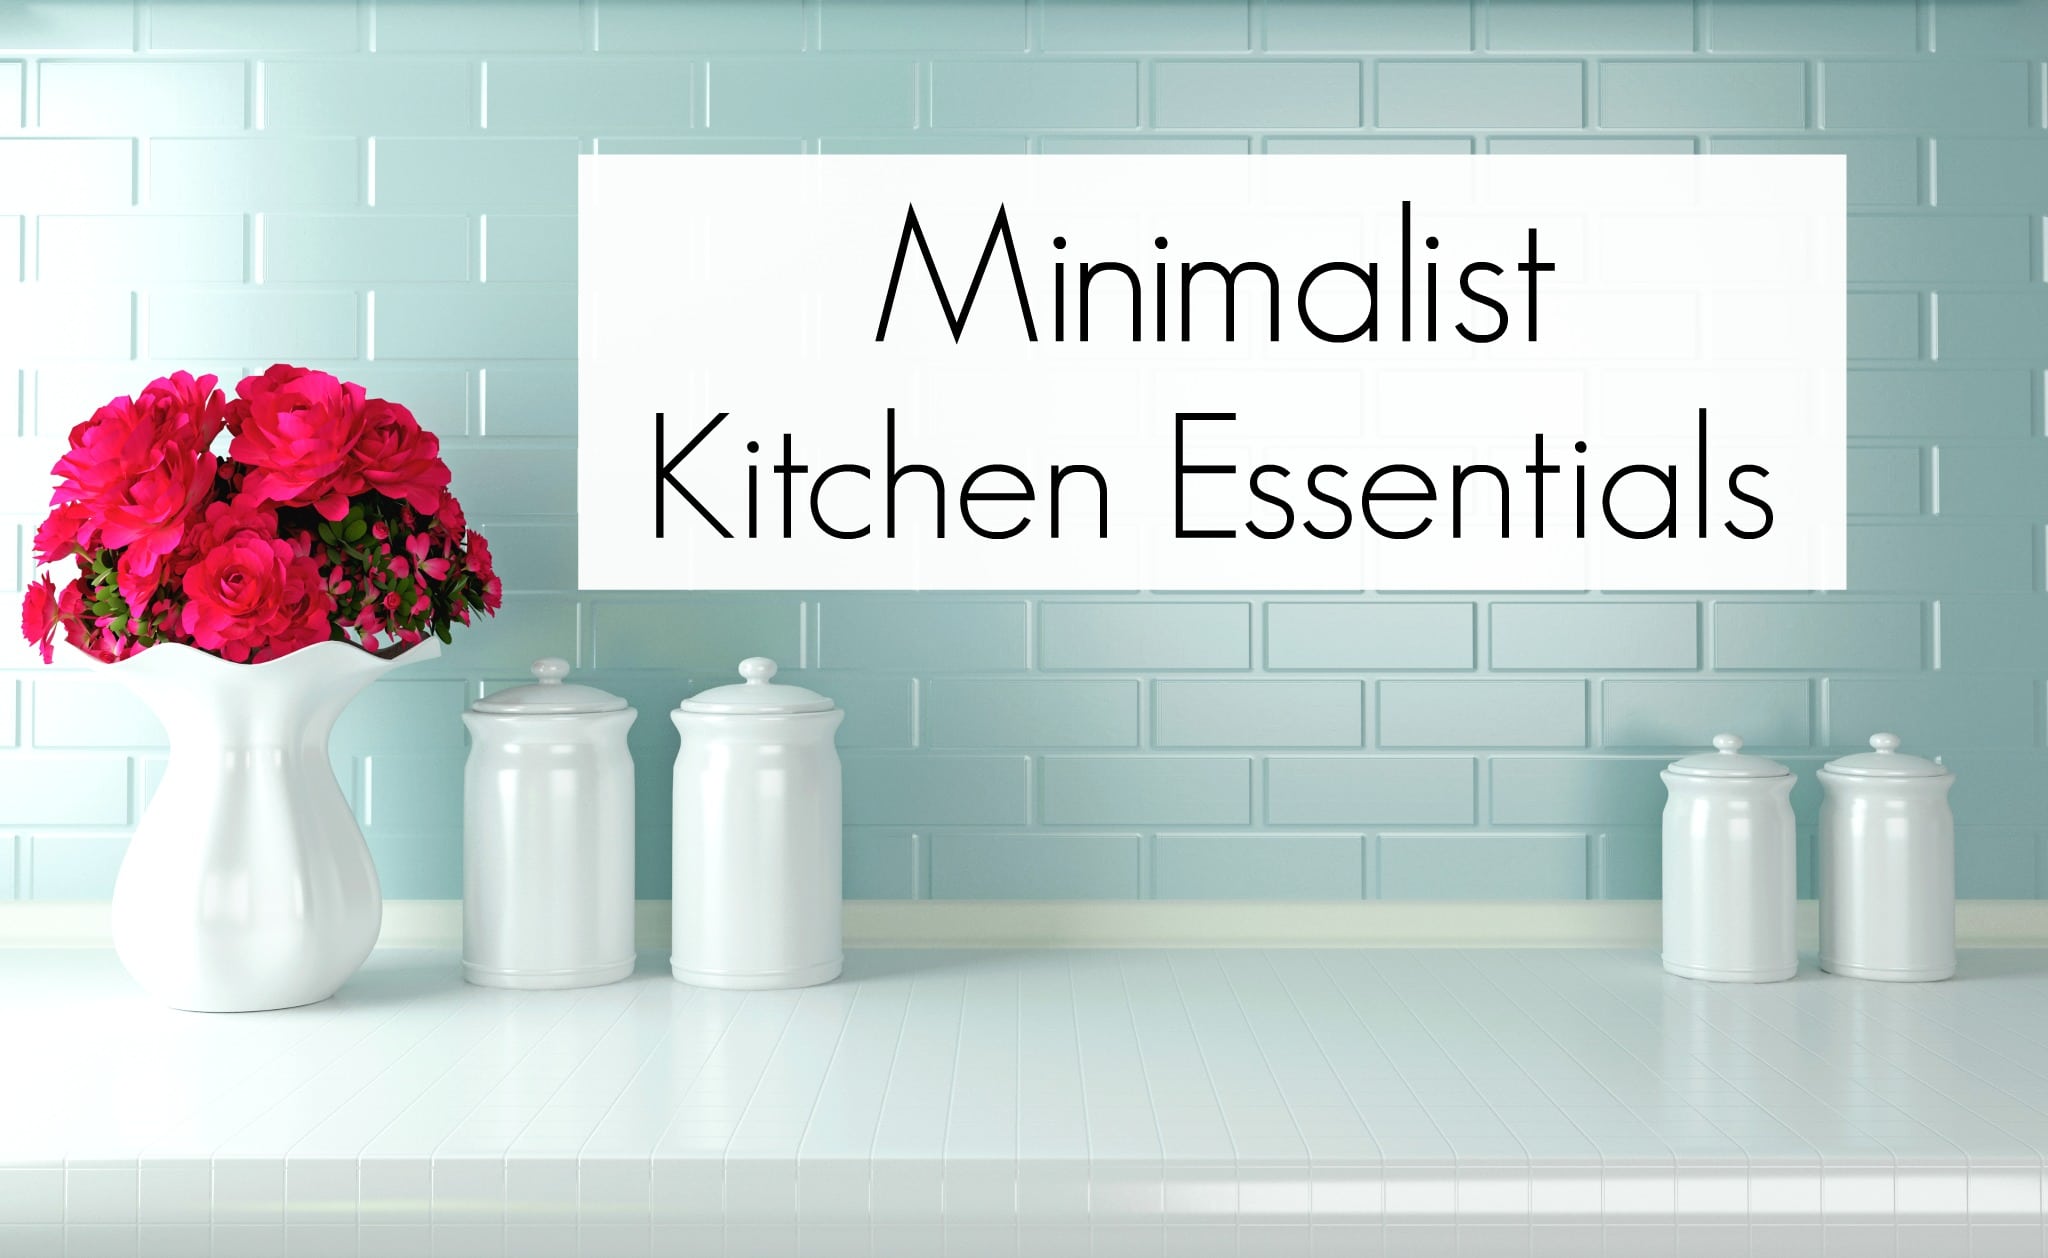 https://www.getgreenbewell.com/wp-content/uploads/2018/08/Minimalist-Kitchen-Essentials.jpg